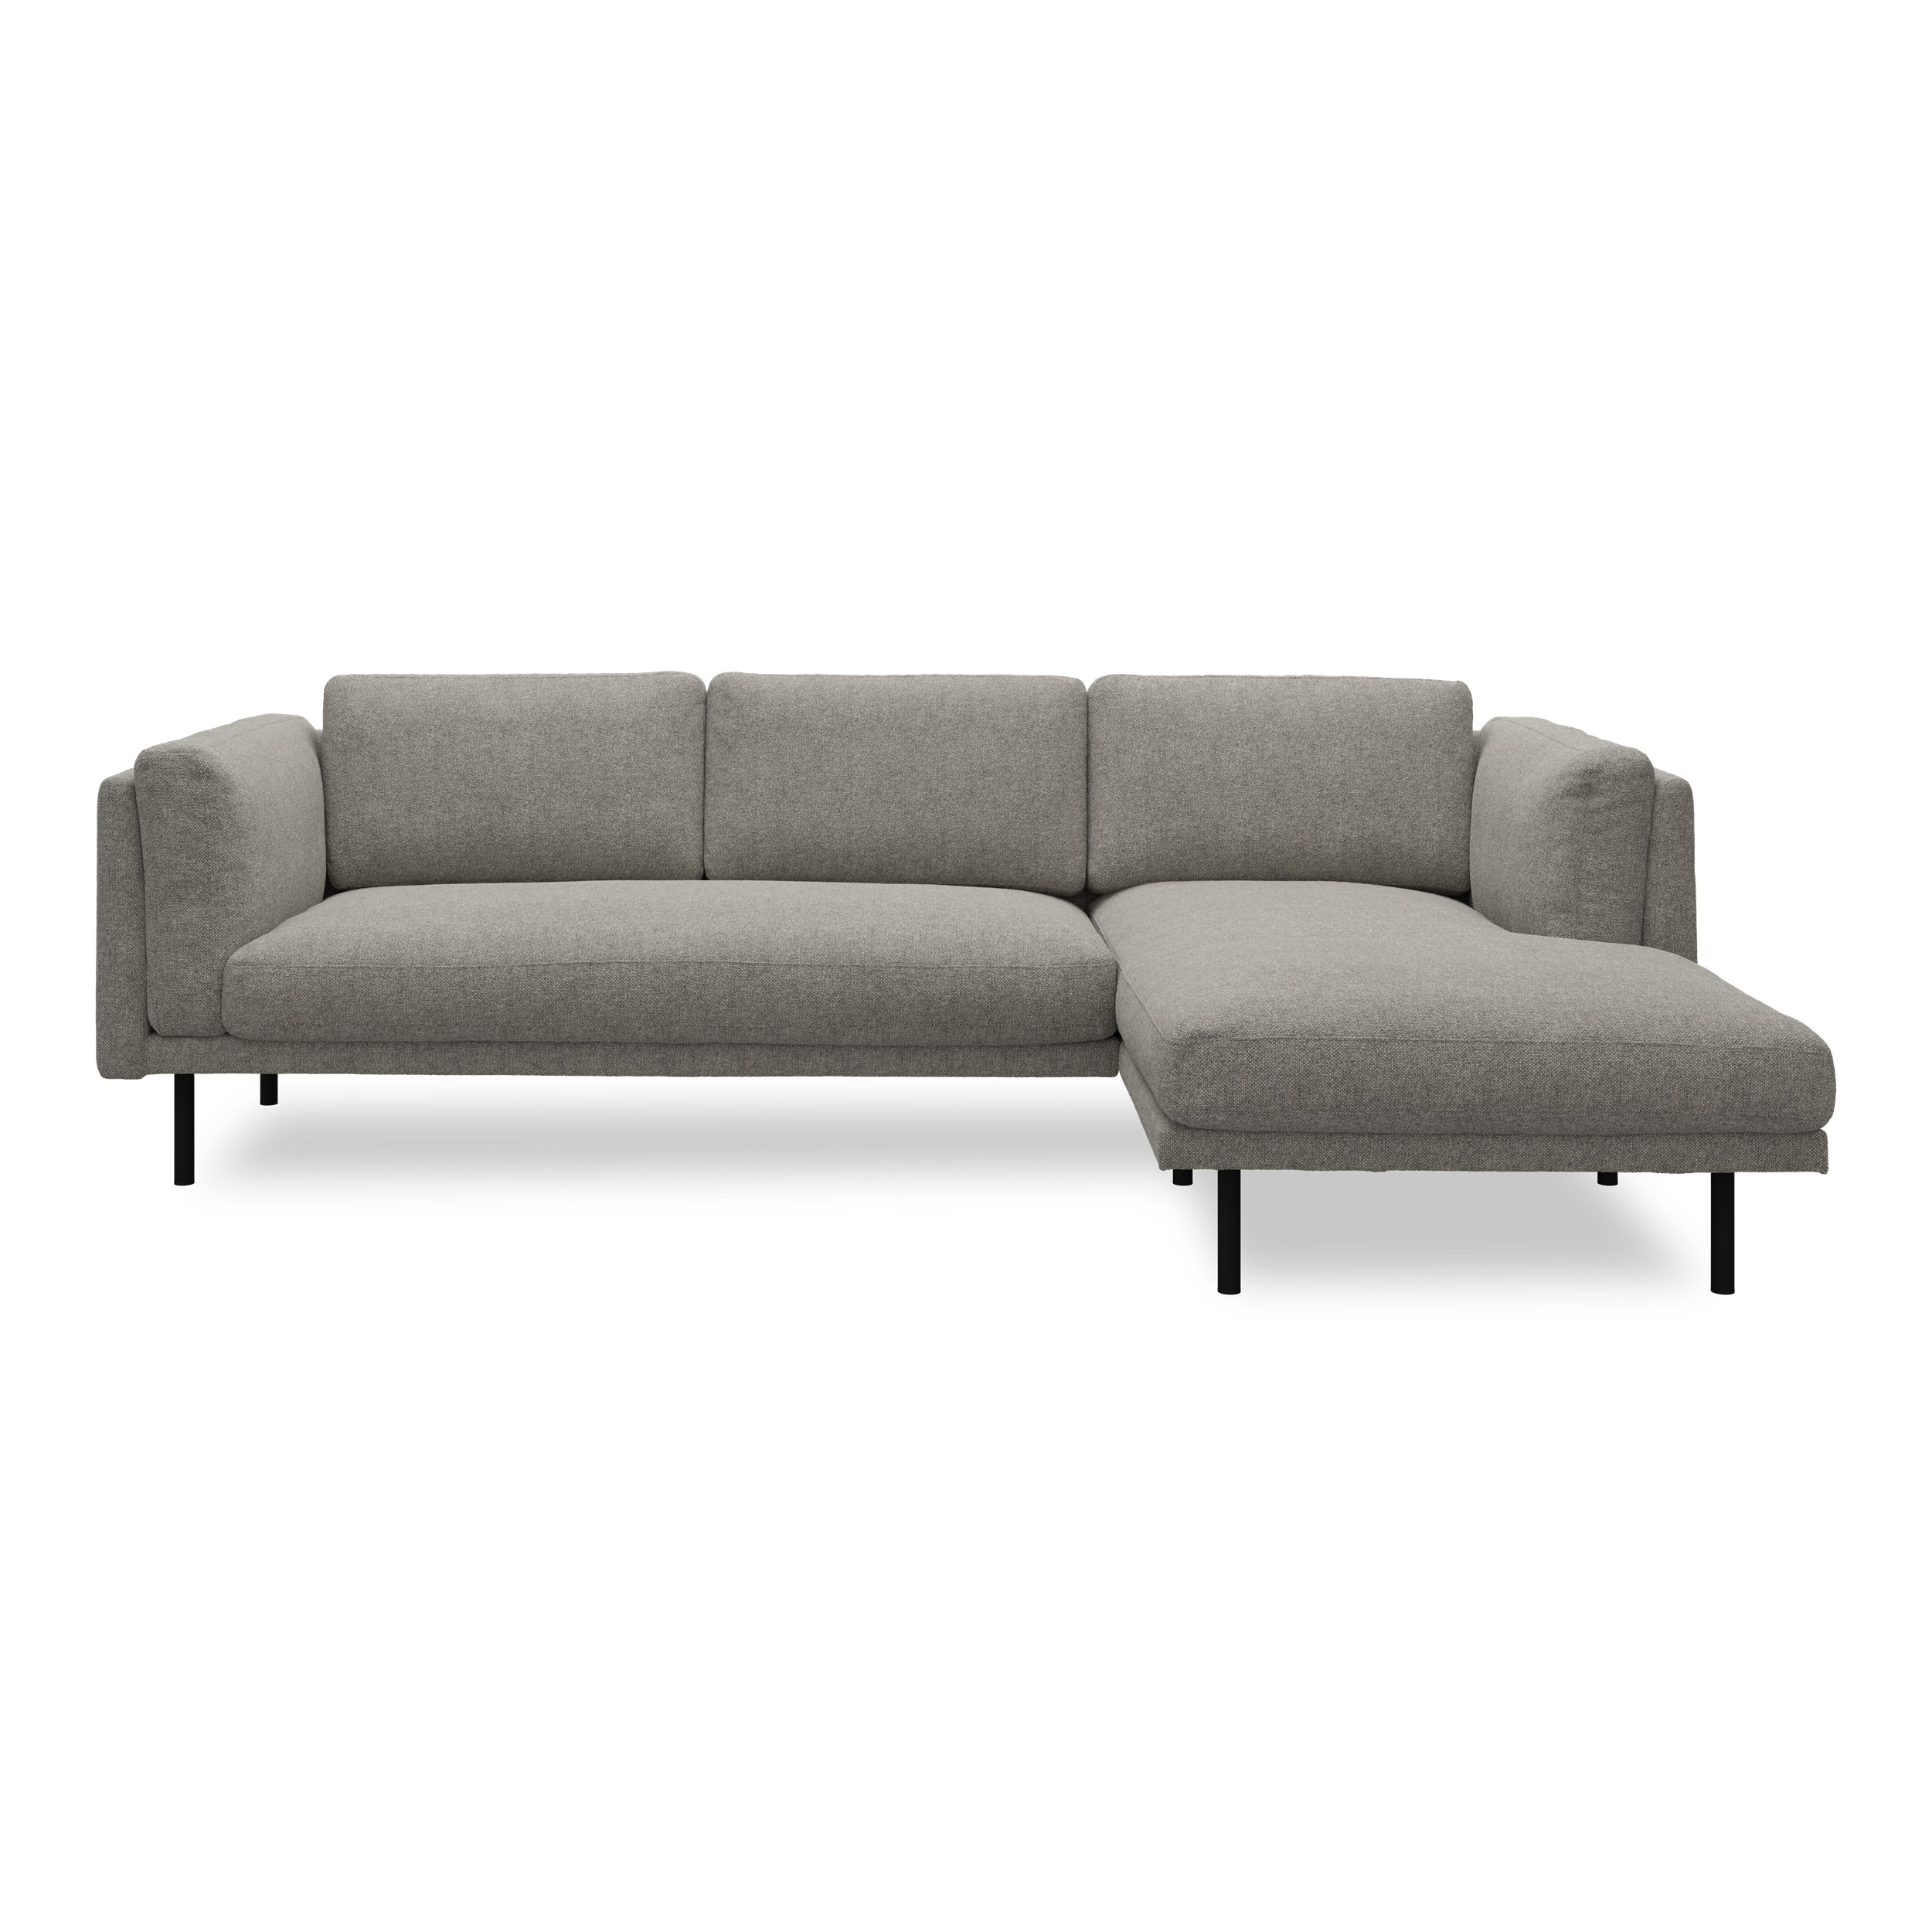 Nebel högervänd soffa med schäslong - Rate 108 Wood textil och svart pulverlackerad metall